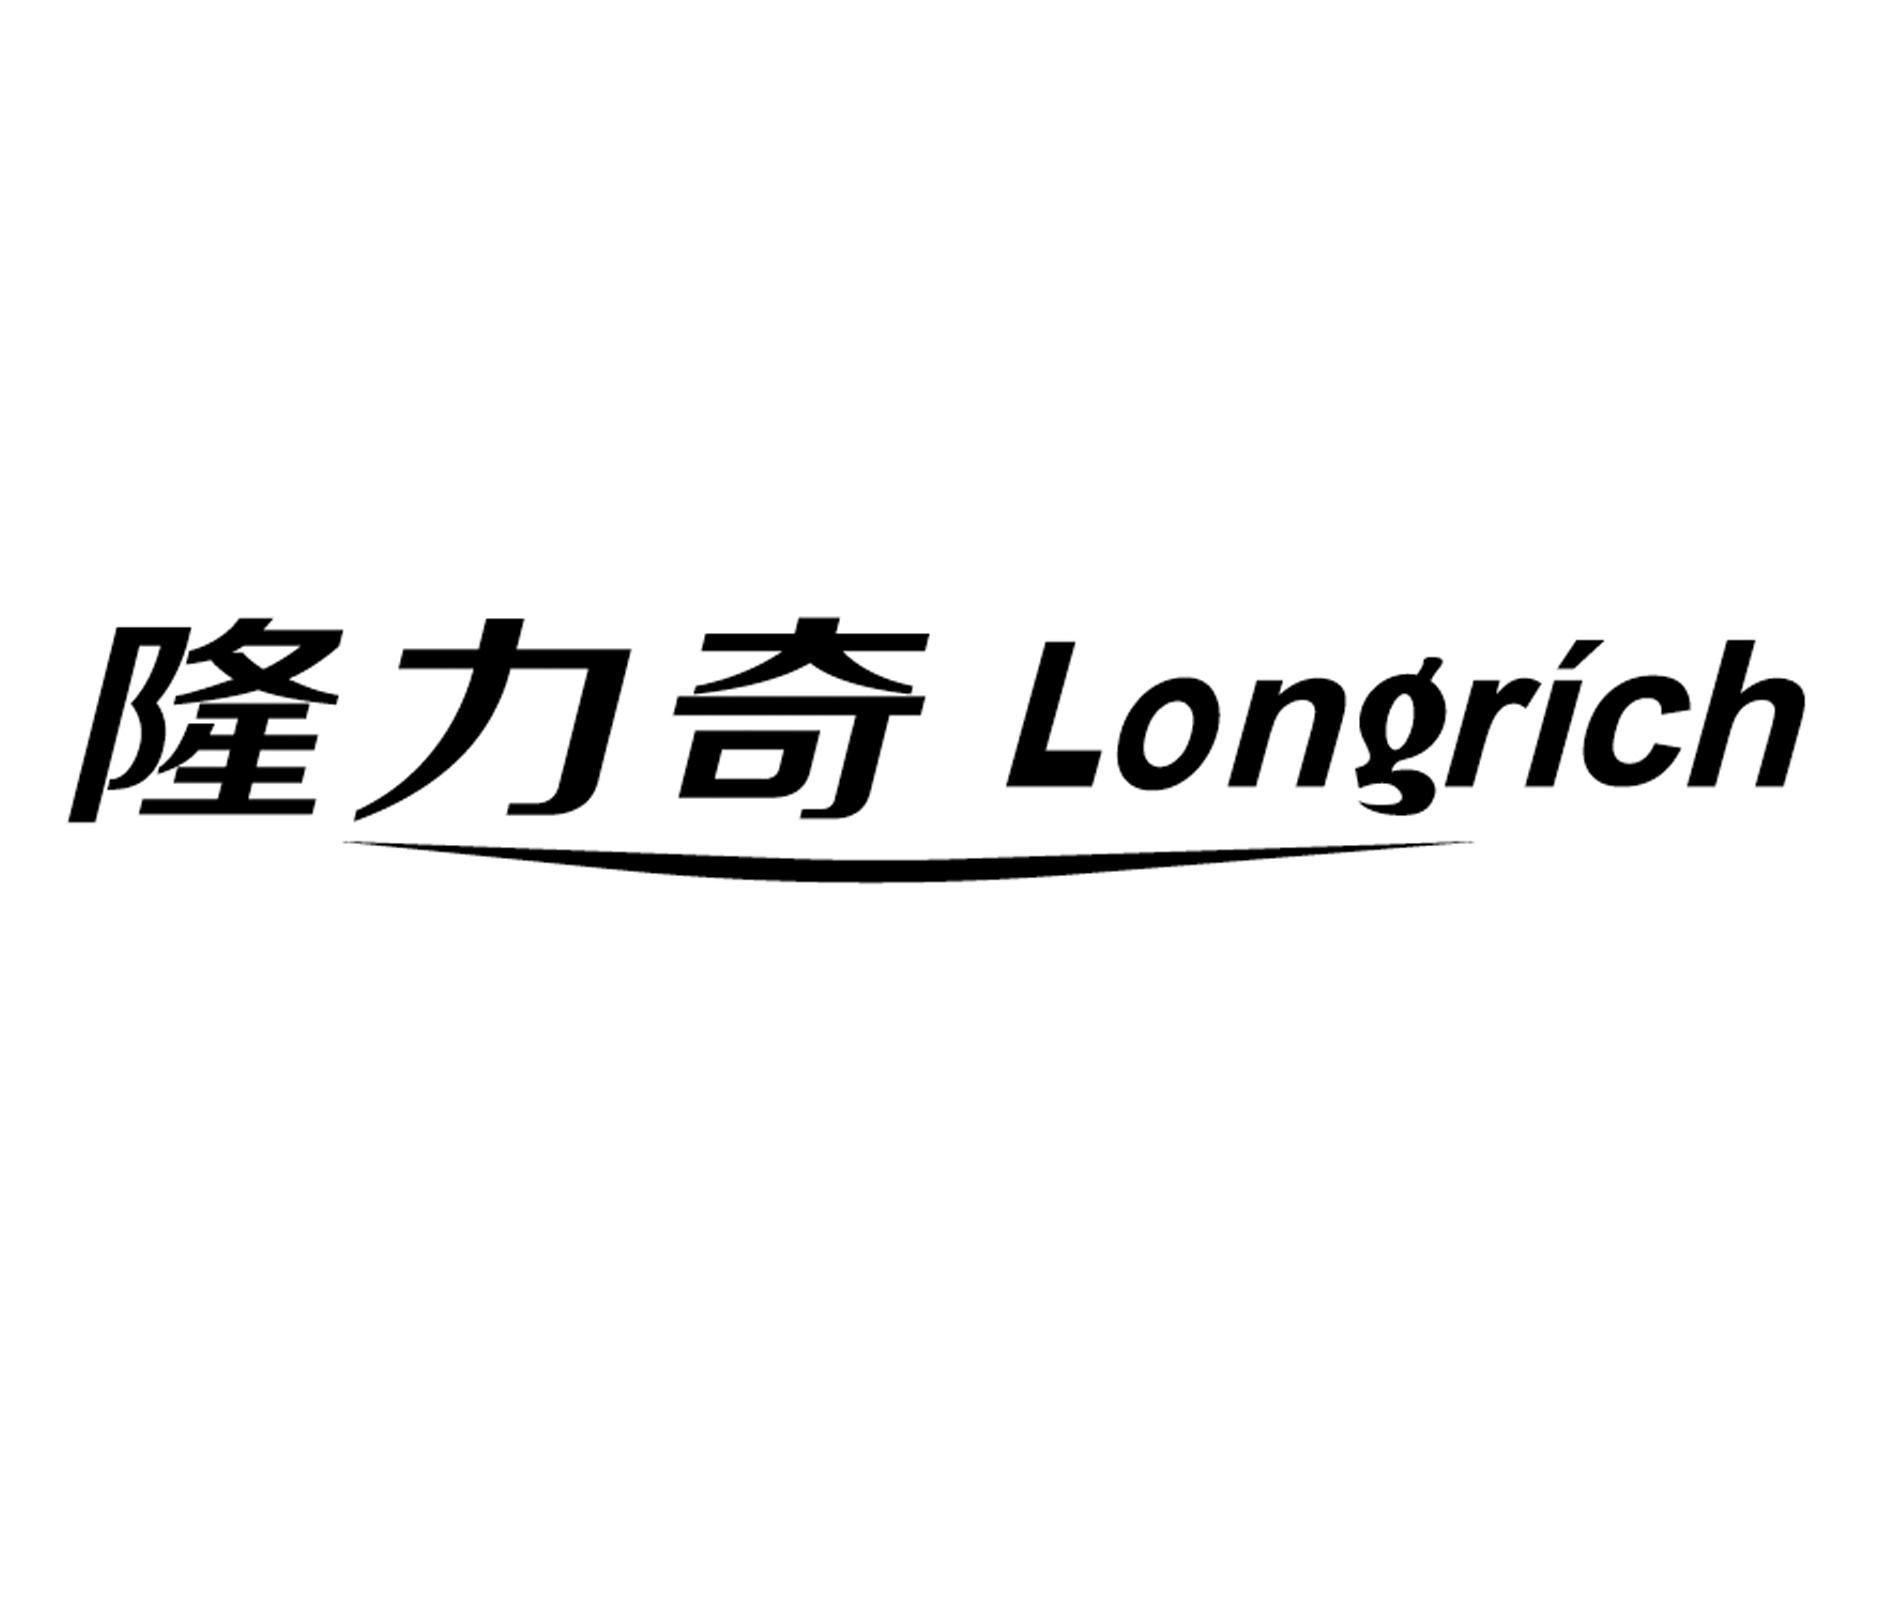 隆力奇 longrich商标公告信息